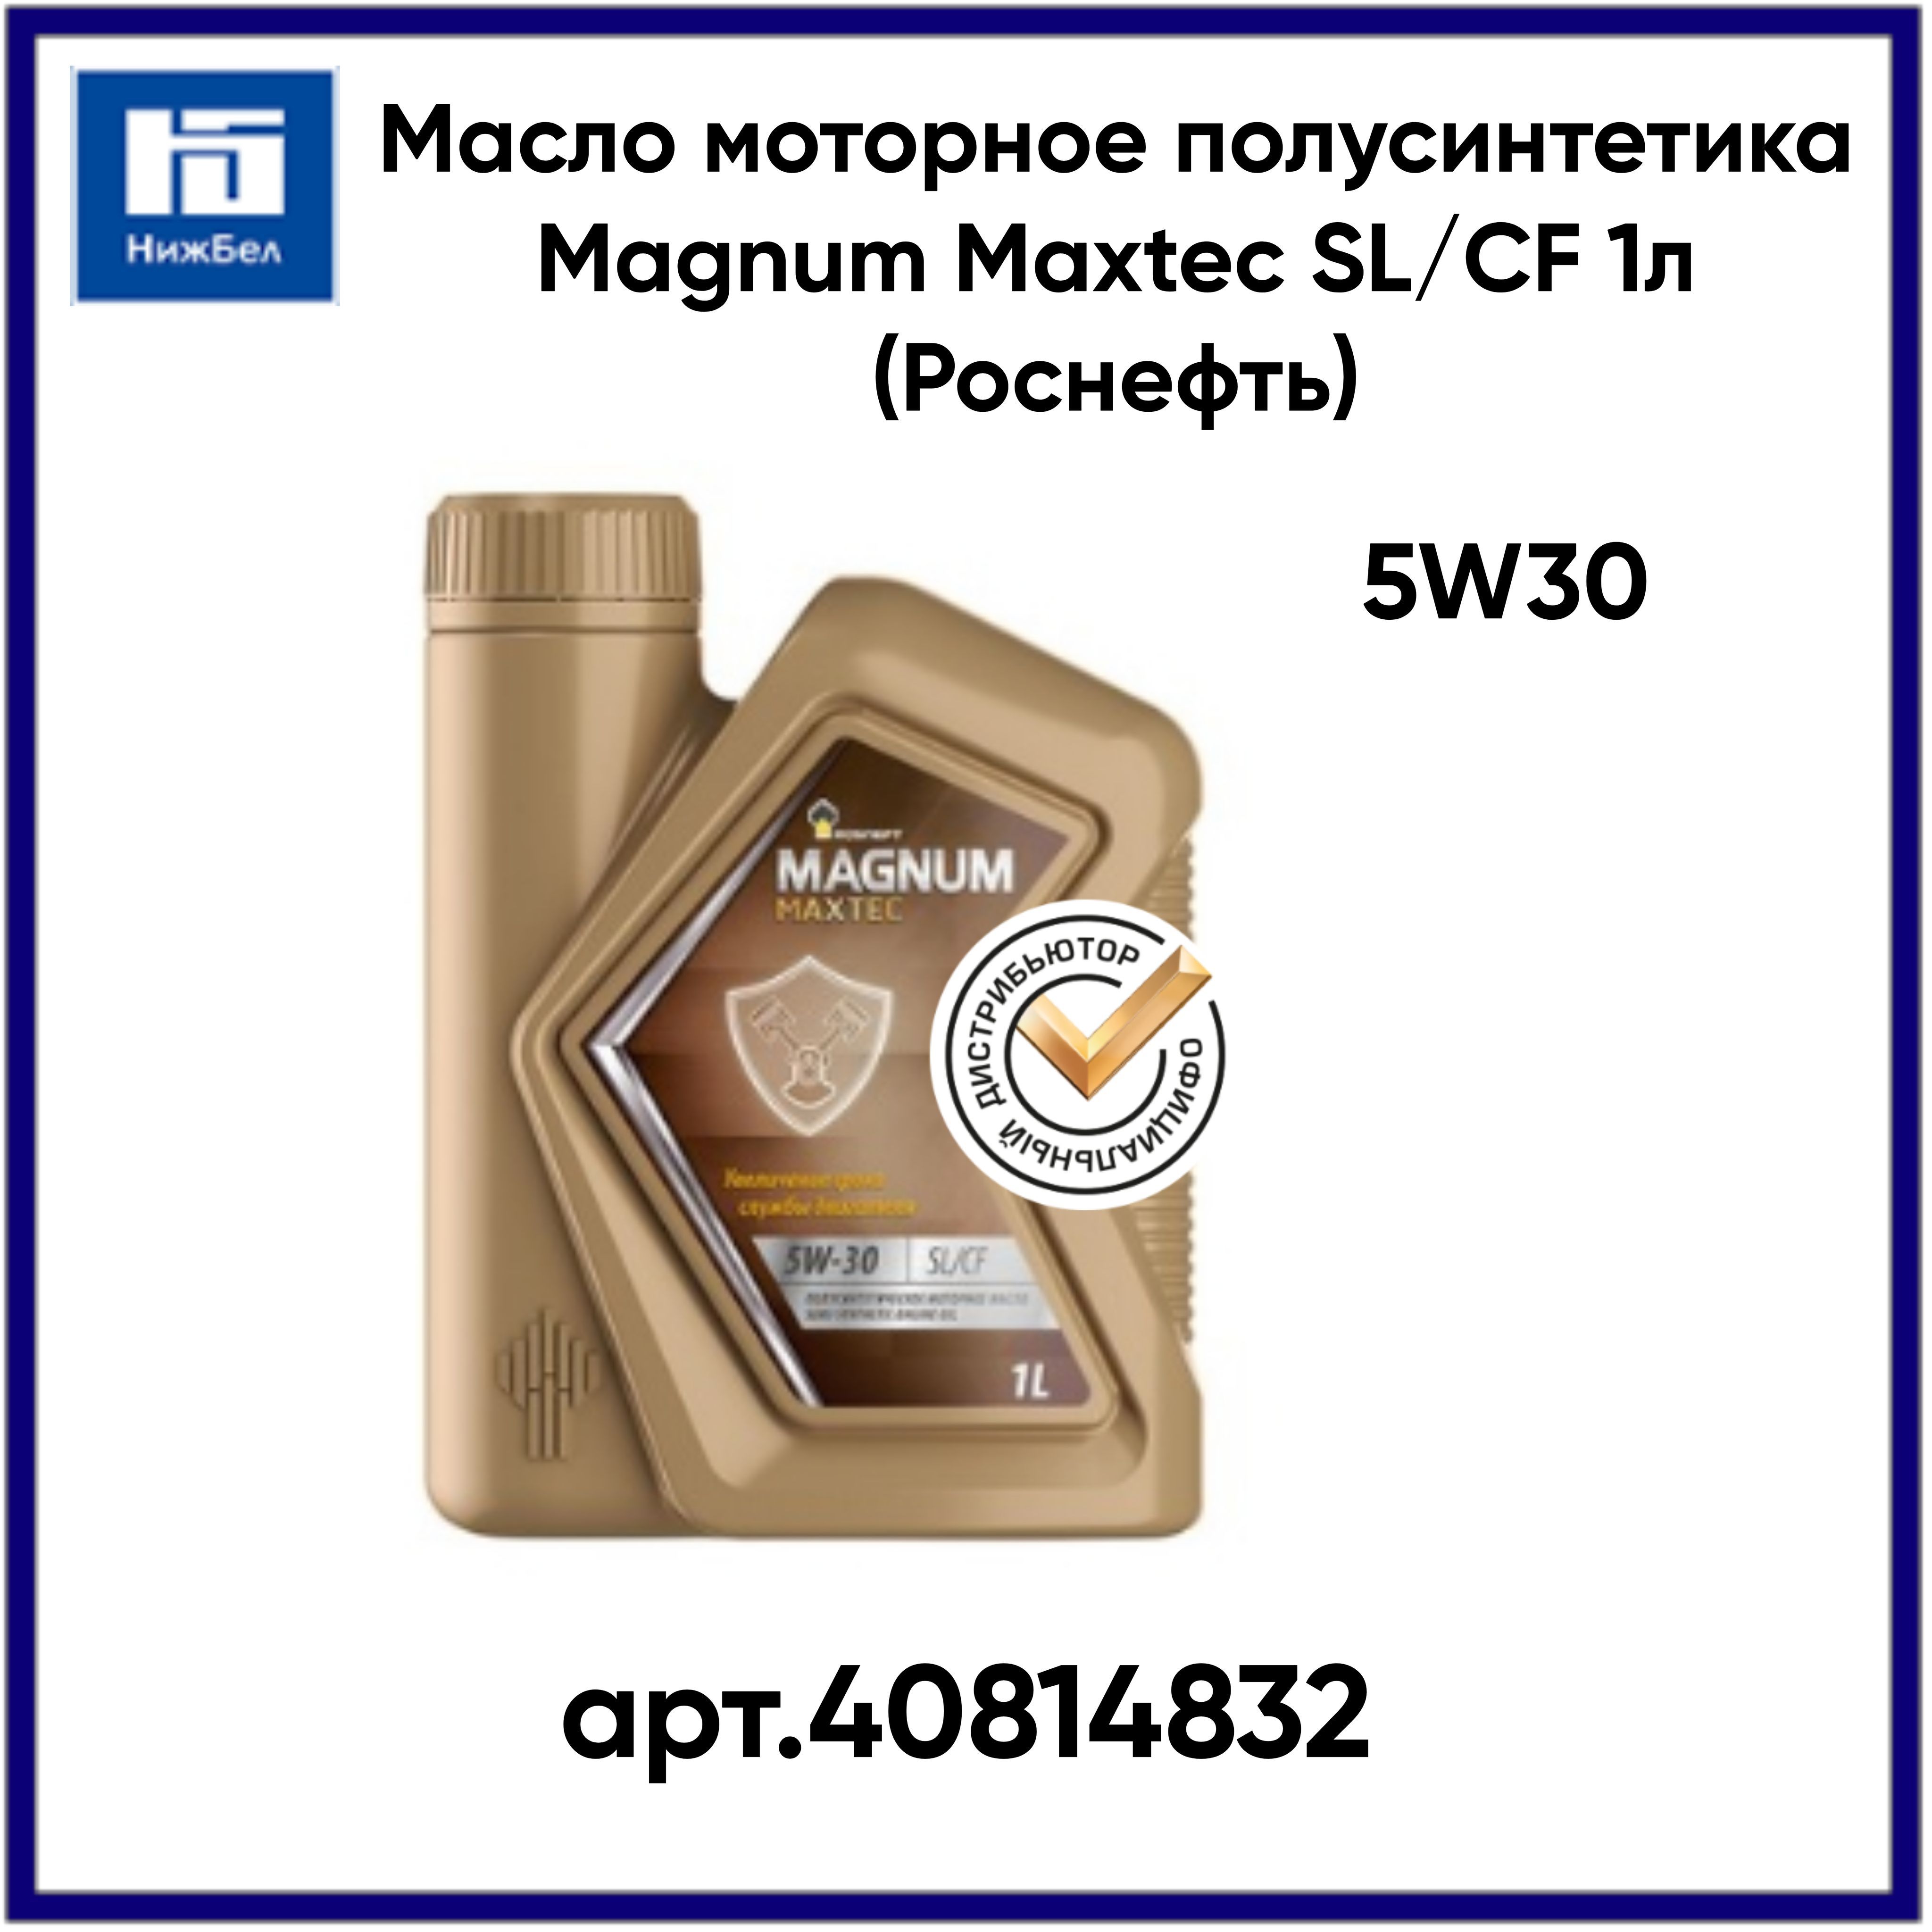 Масло роснефть магнум полусинтетика. Magnum Maxtec 5w-30.